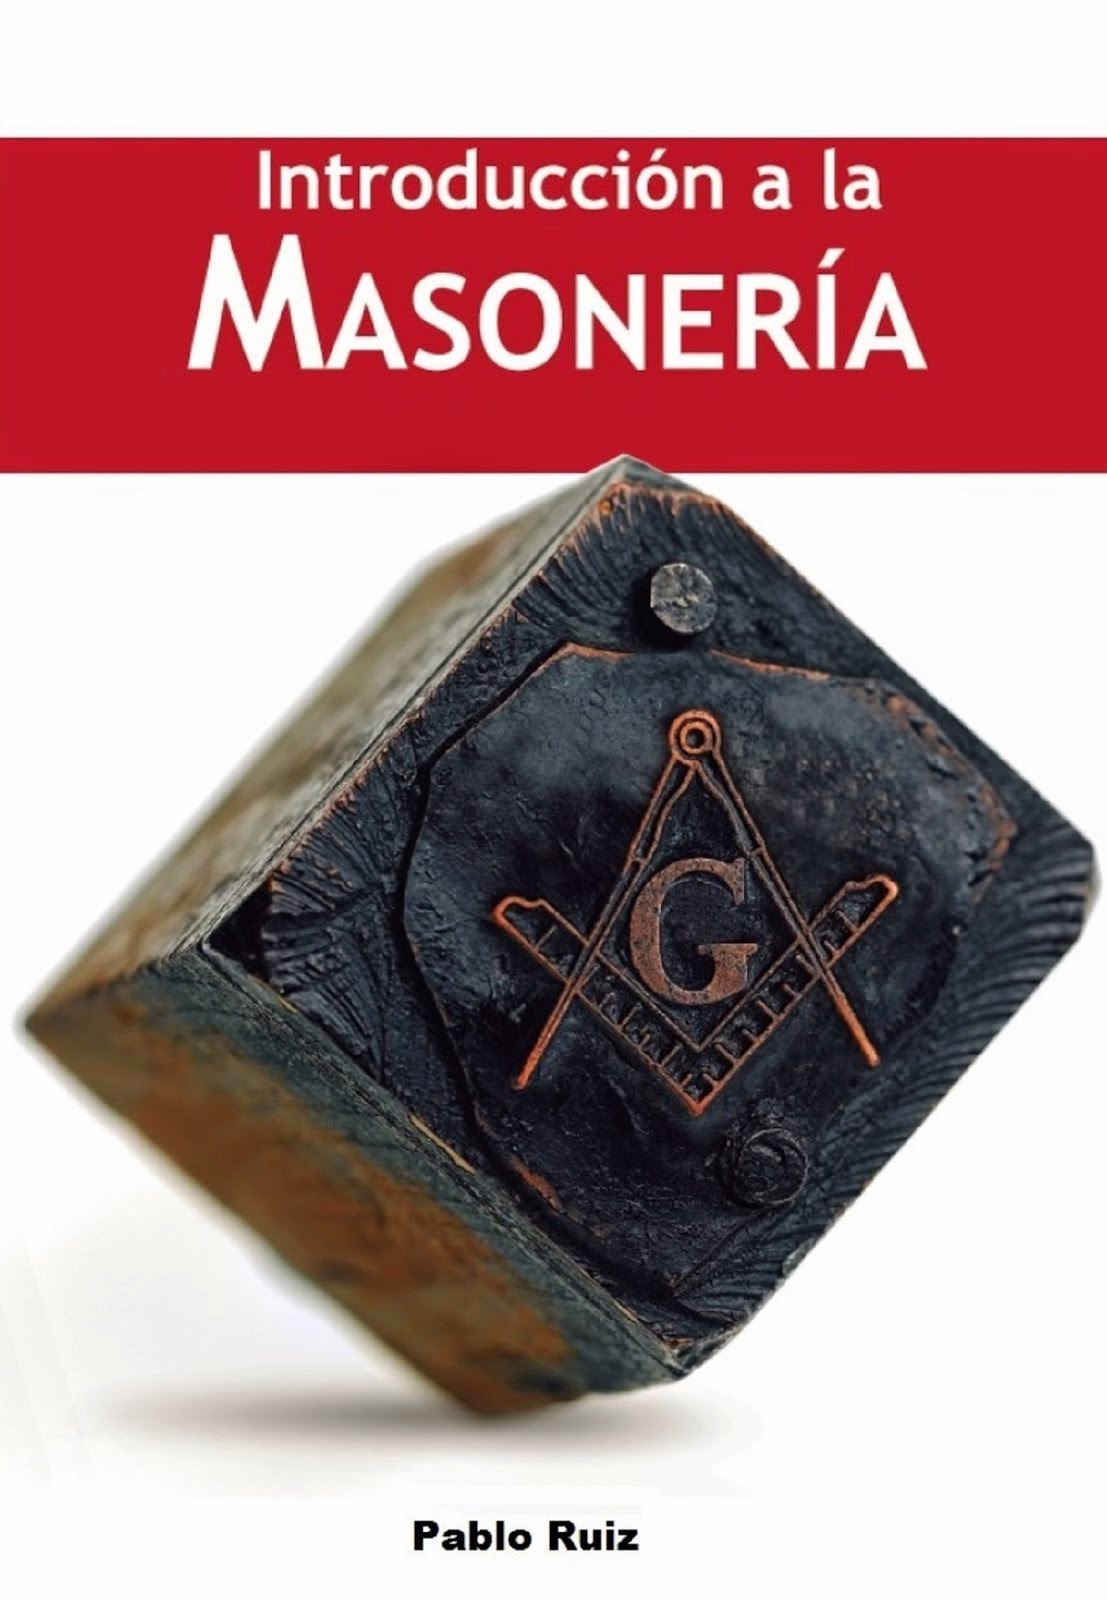 "Introducción a la Masonería"